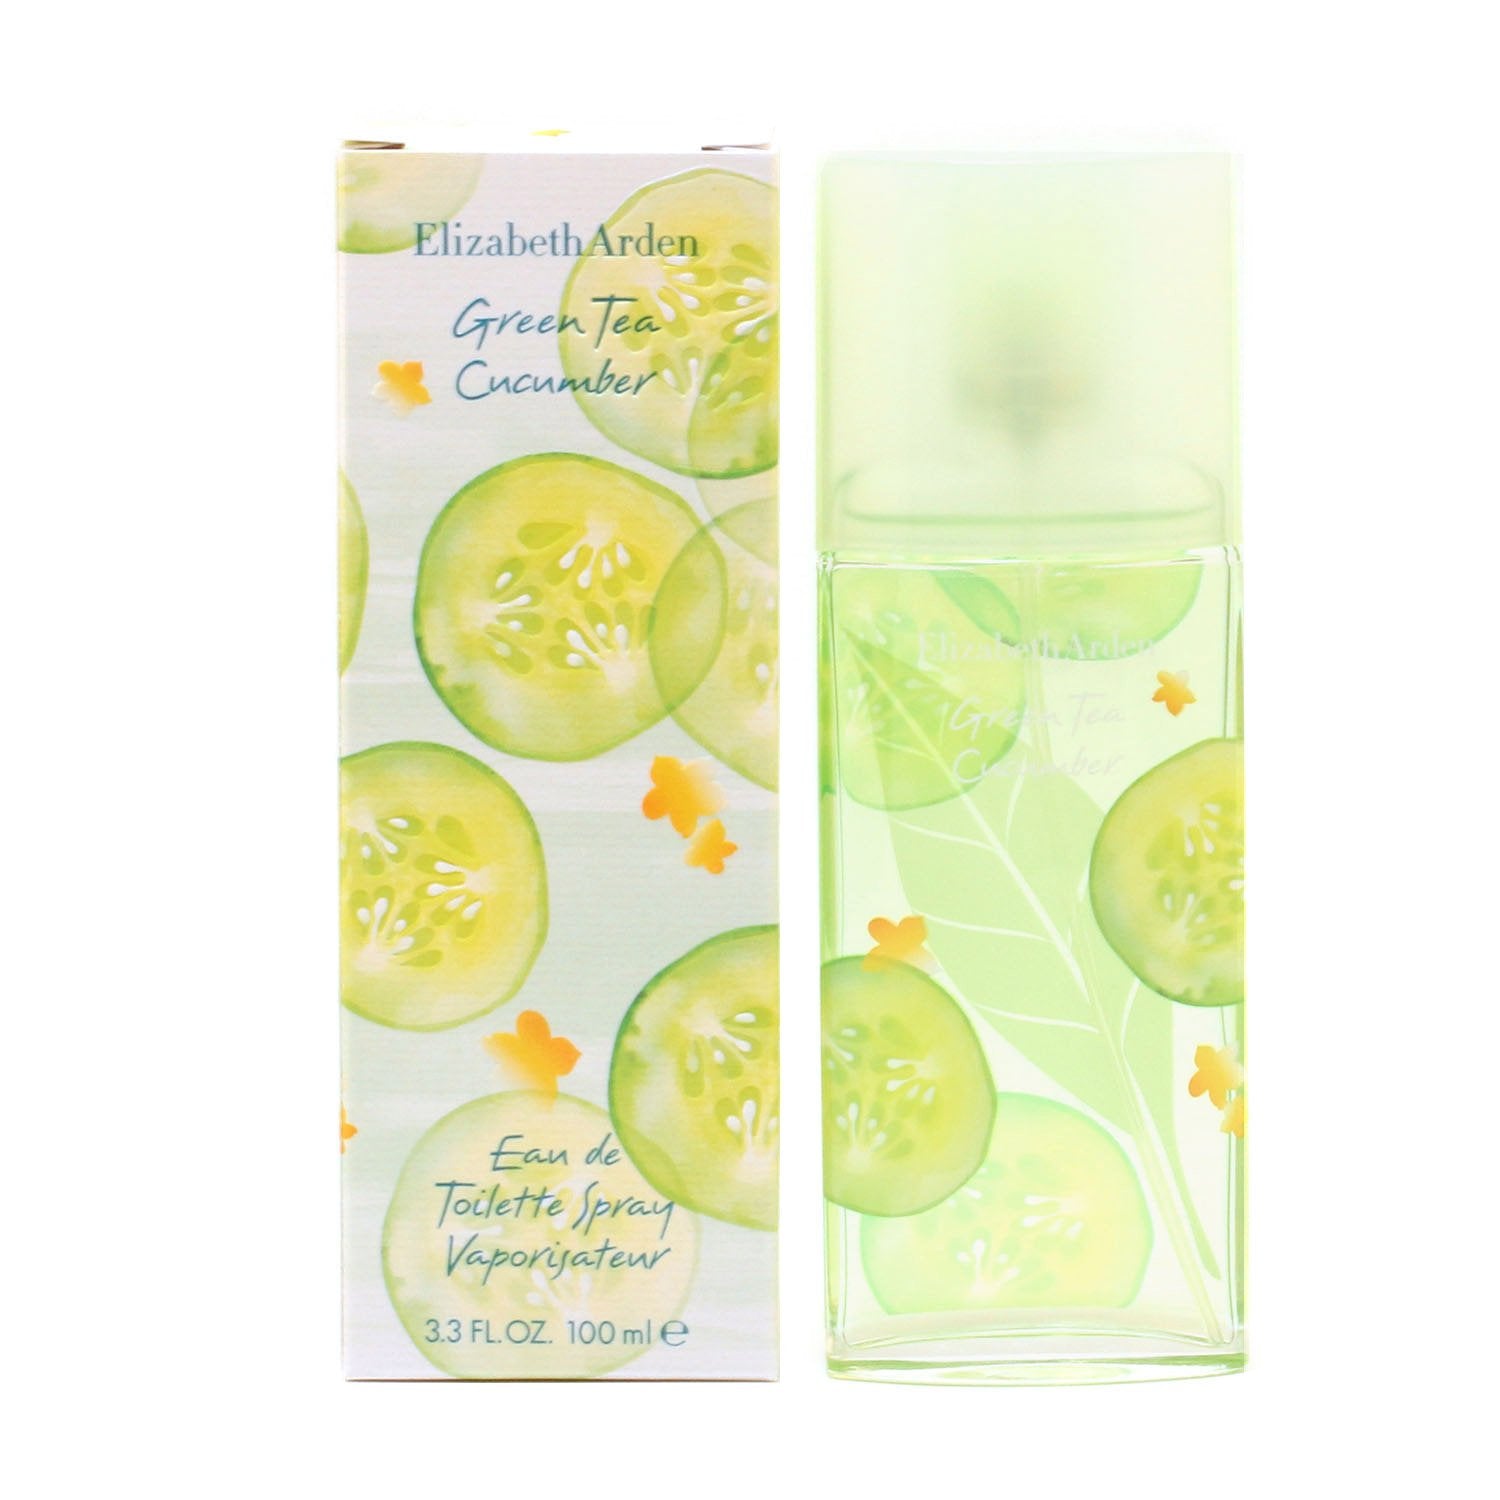 GREEN TEA CUCUMBER FOR WOMEN BY ELIZABETH ARDEN - EAU DE TOILETTE SPRA –  Fragrance Room